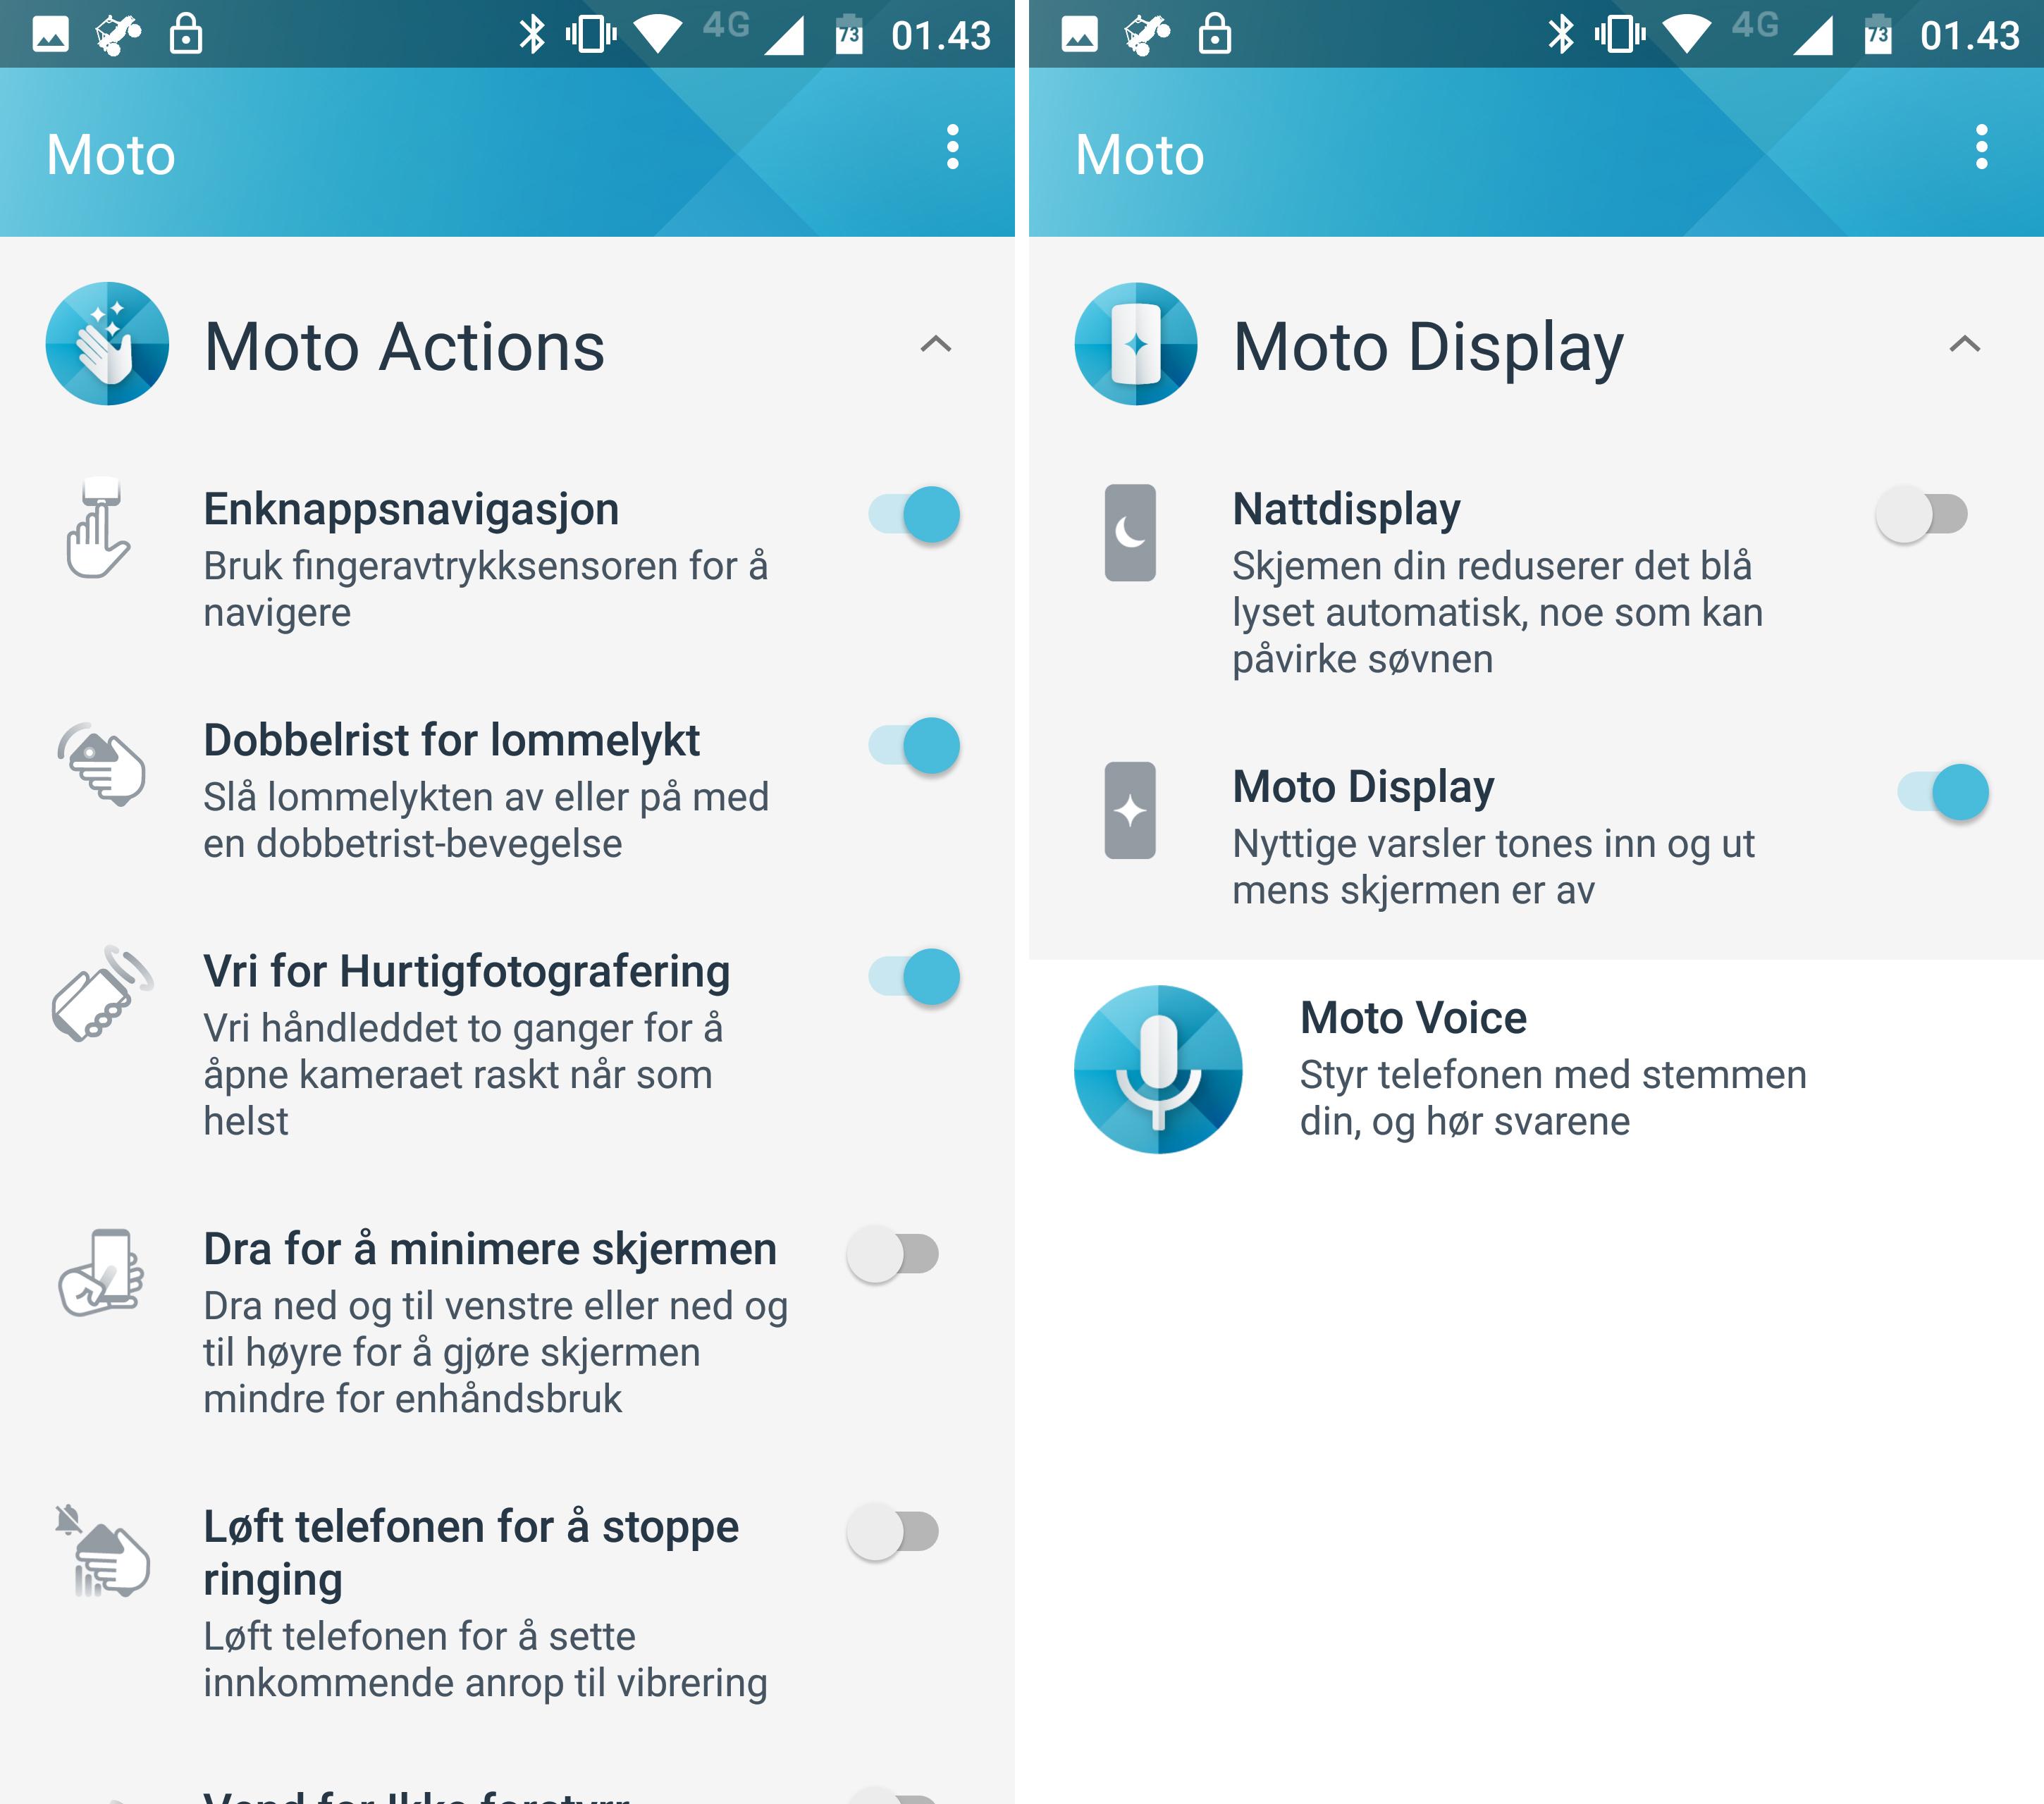 Motos egne funksjoner er for det mestet samlet i en egen app. Moto Voice er foreløpig ikke støttet på norsk, men i hovedsak er resten av funksjonene relativt nyttige.